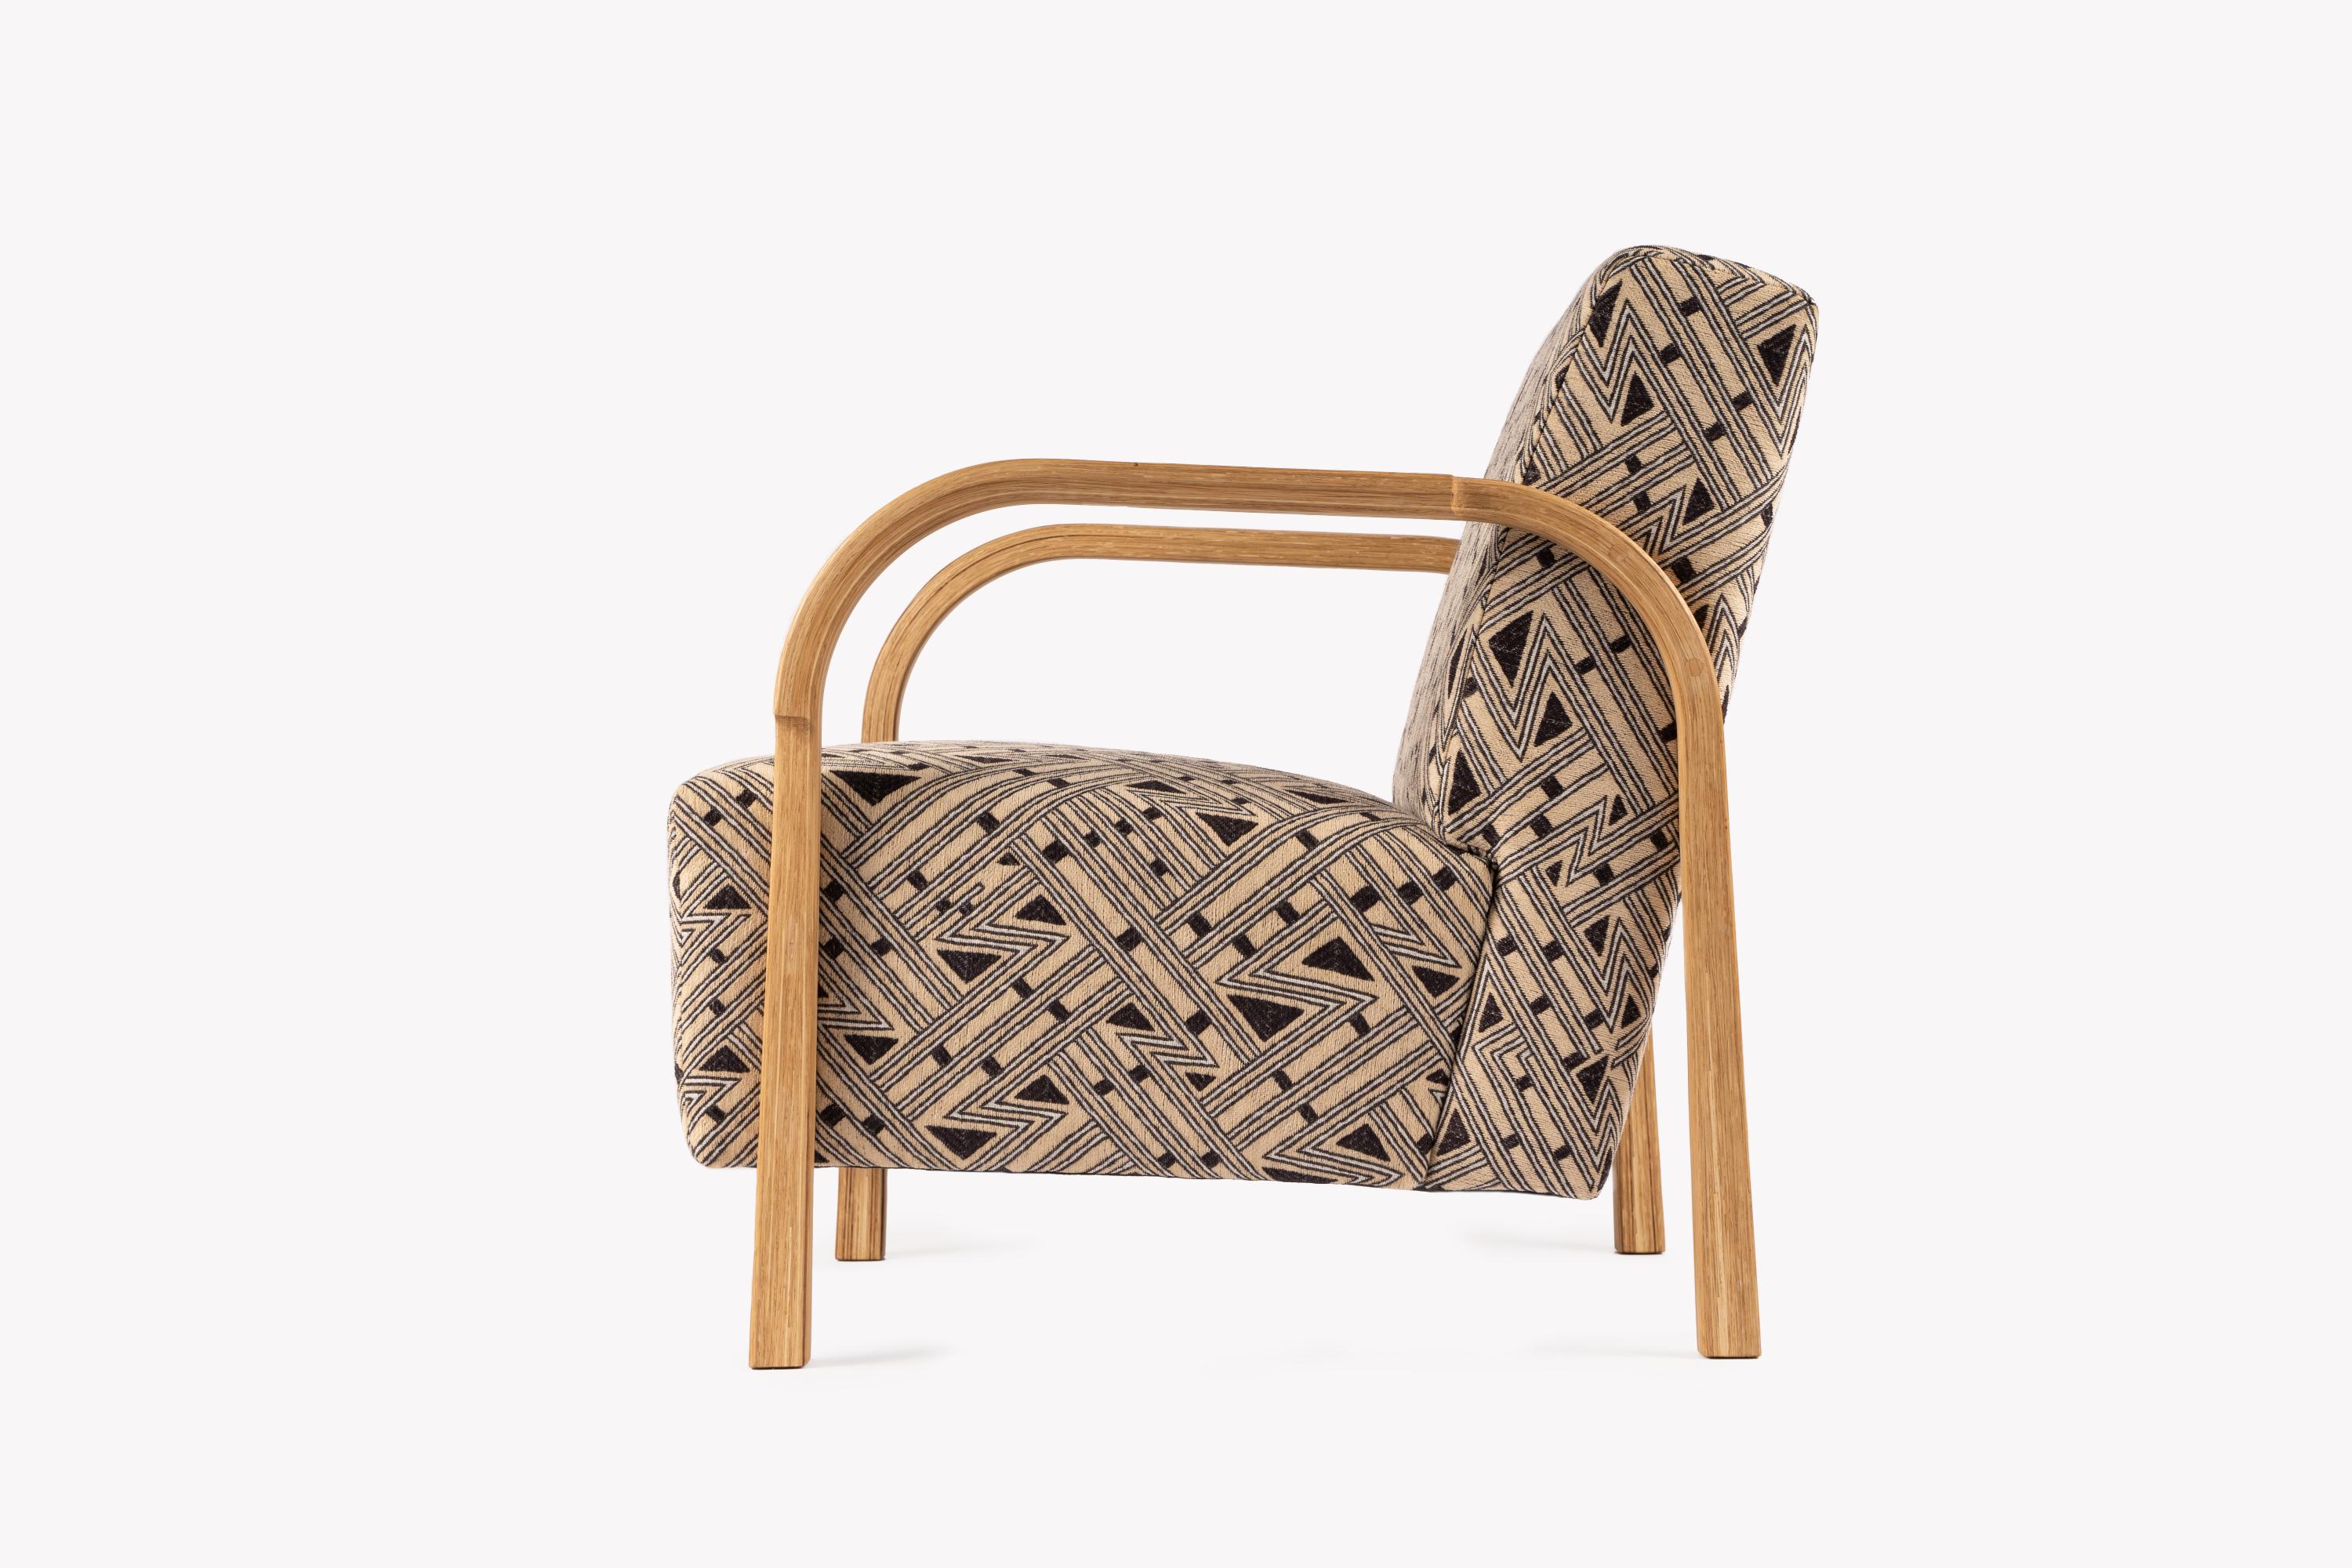 Danish JENNIFER SHORTO / Kongaline & Seafoam ARCH Lounge Chairs by Mazo Design For Sale